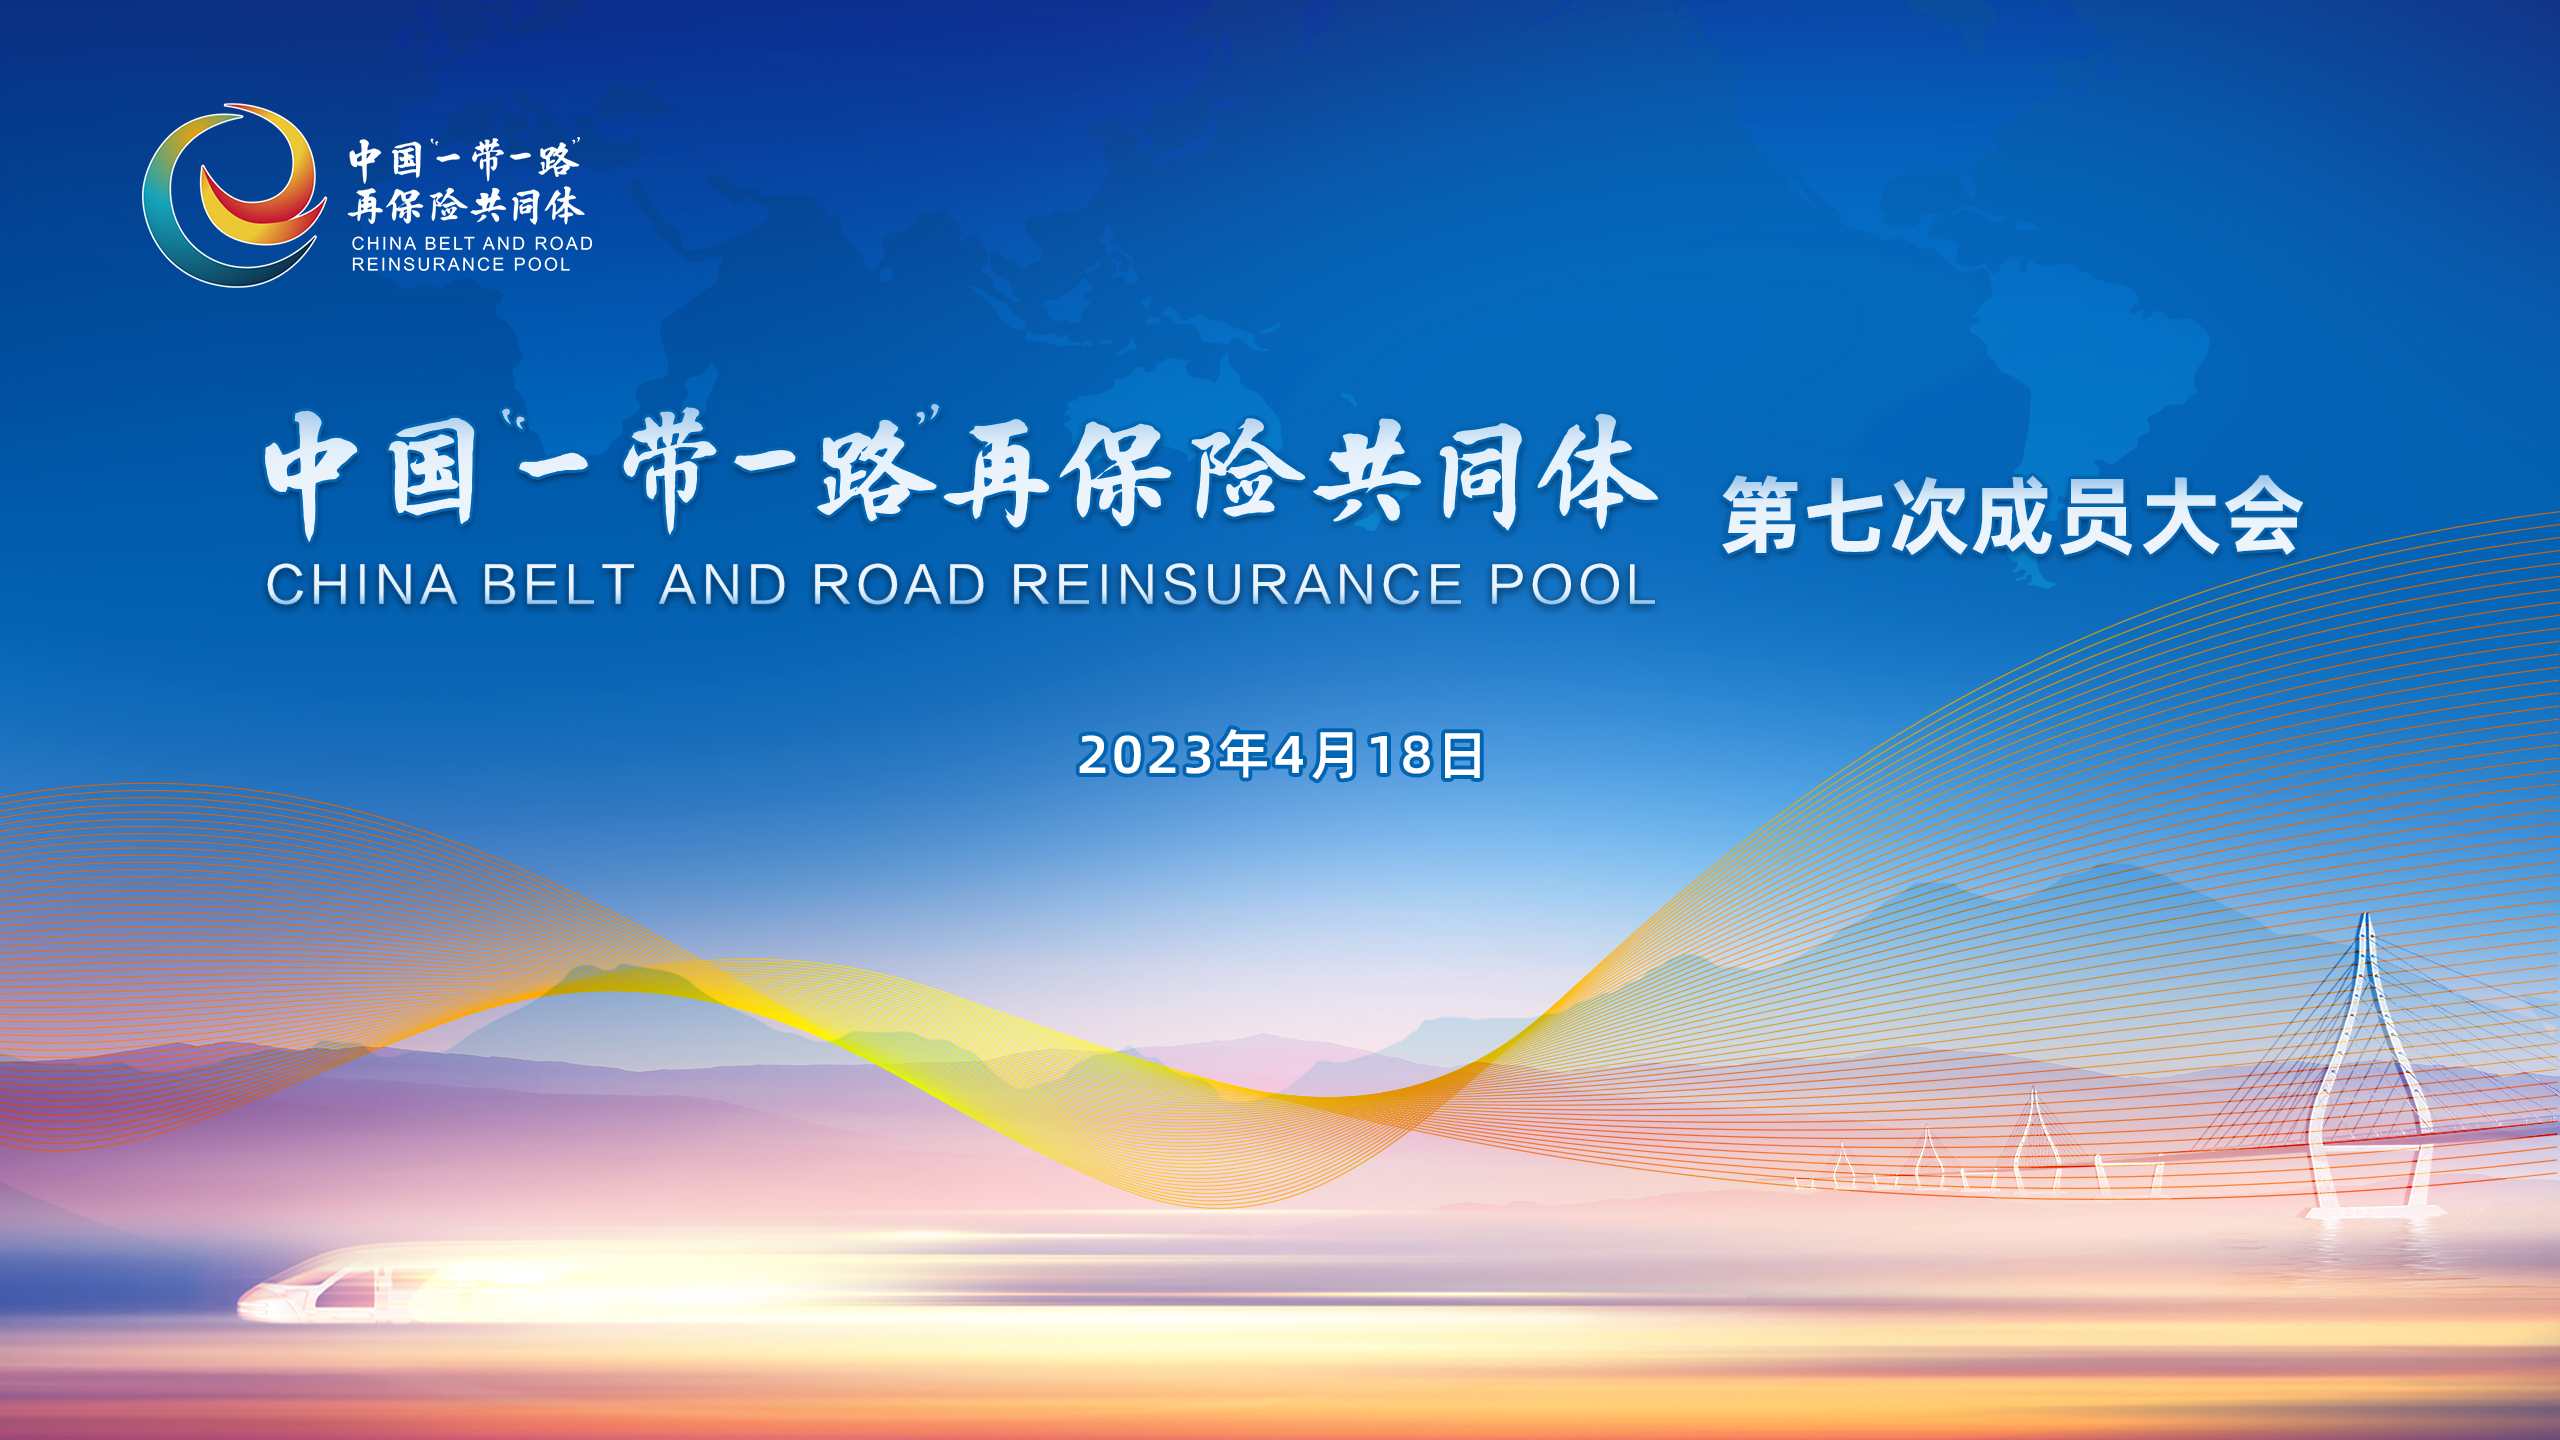 中国“一带一路”再保险共同体第七次成员大会在京召开